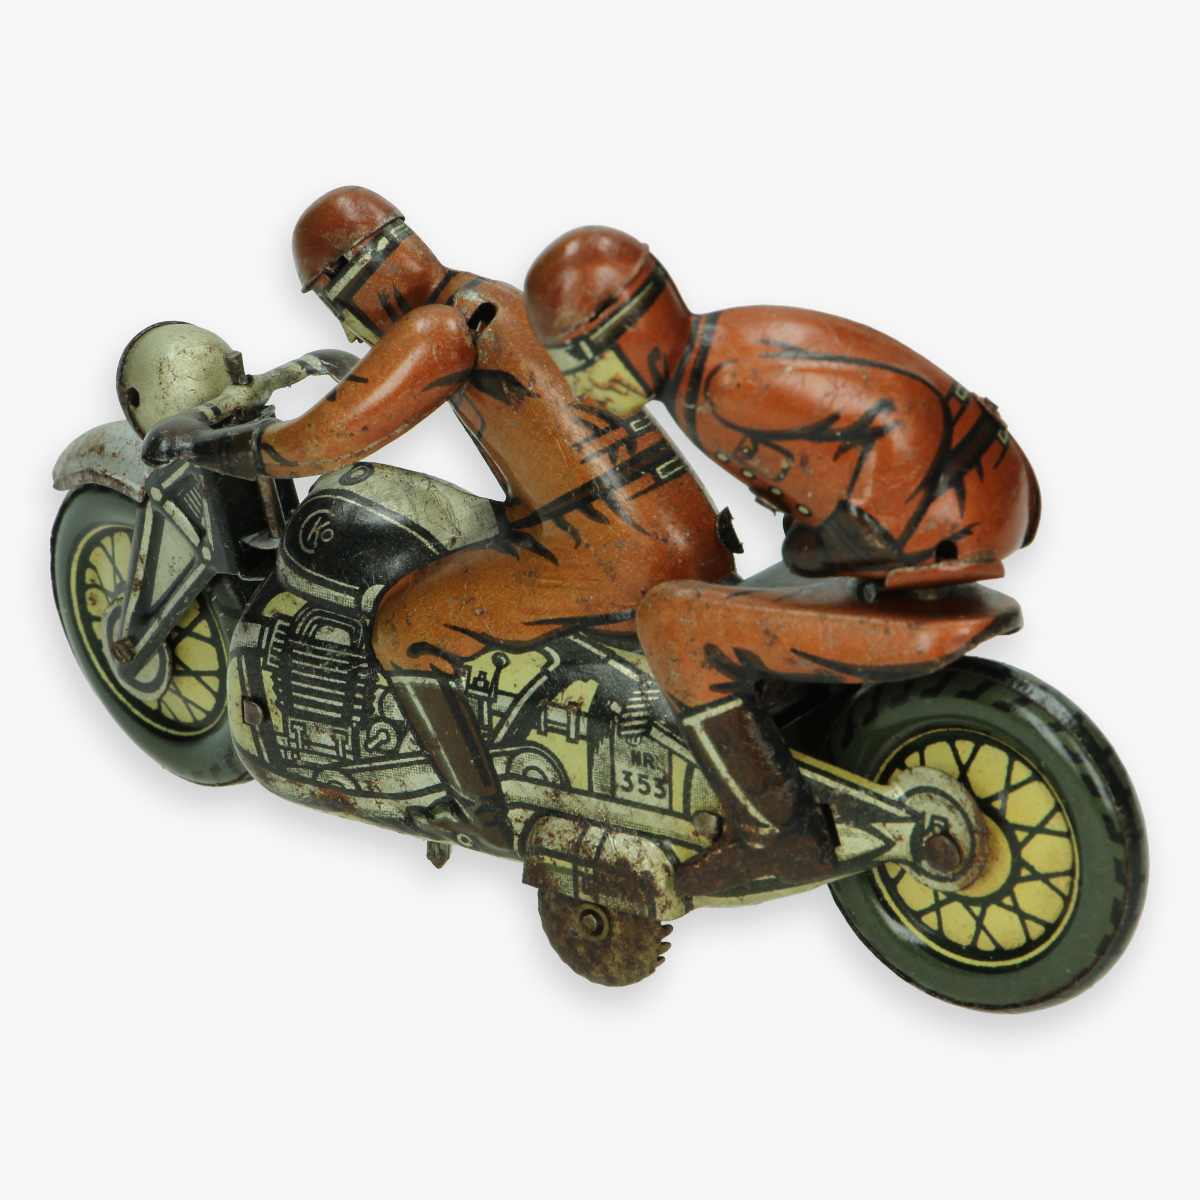 Afbeeldingen van kellerman sozuis cko jaren 30 tin toy motorcycle nr 353 military zeer zeldzaam